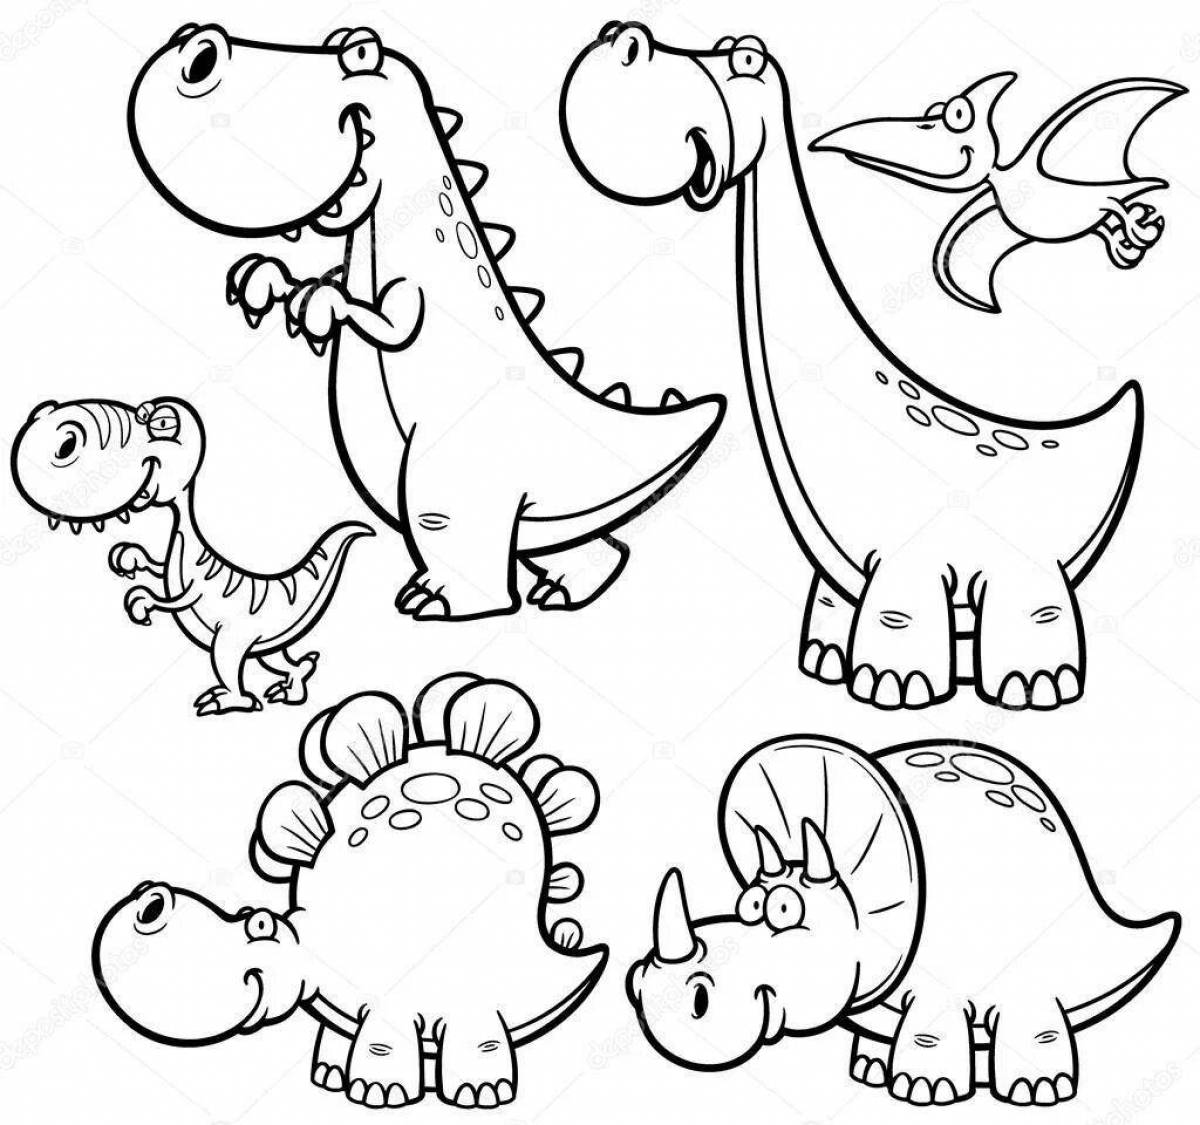 Dinosaurs playful coloring book